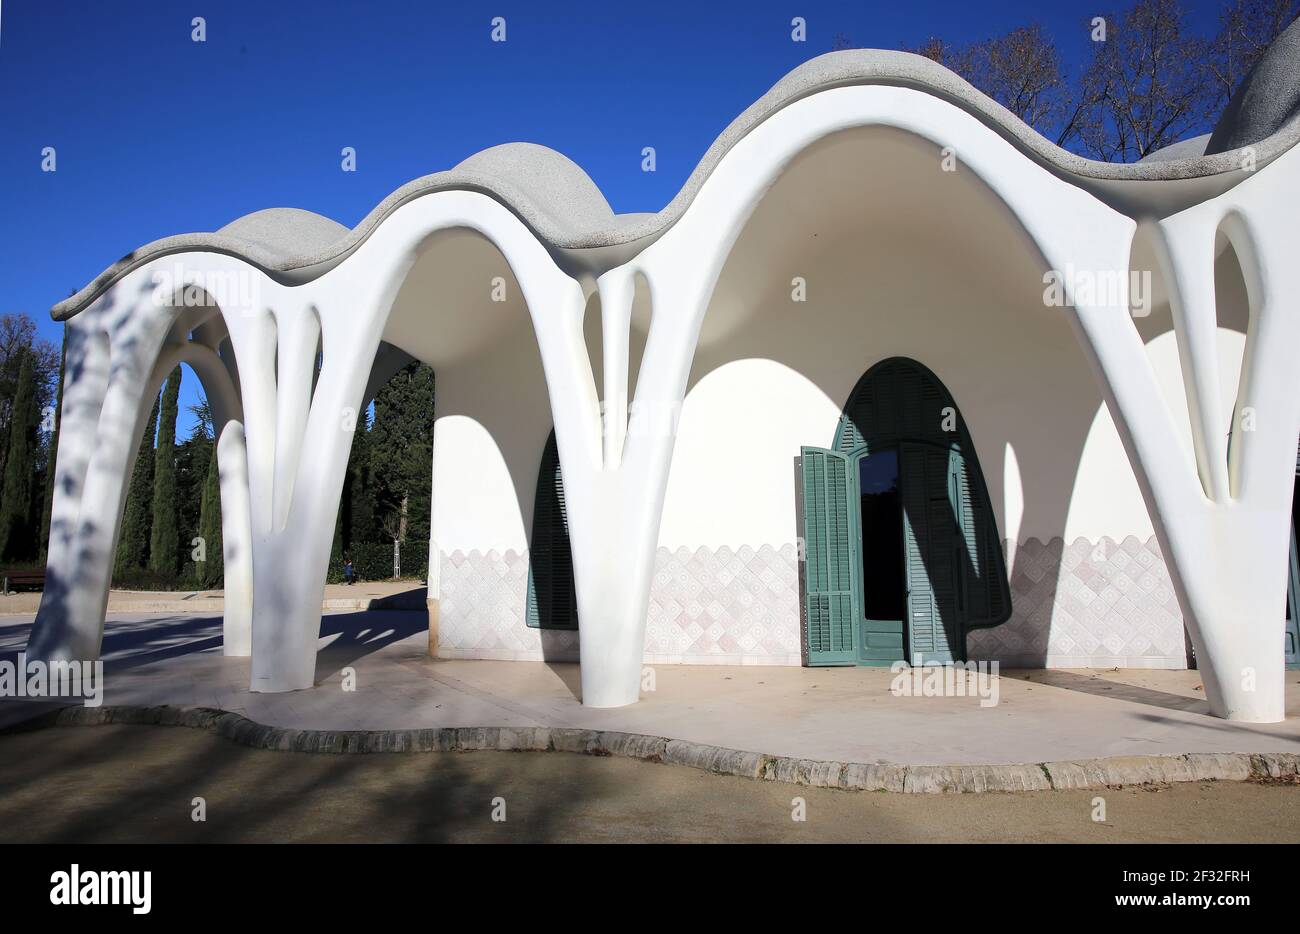 Masia Freixa ( 1907 ). Modernistisches Gebäude, inspiriert von Gaudí. Lluis Moncunill Architekt. Parc de Sant Jordi, Terrassa, Katalonien. Spanien. Stockfoto